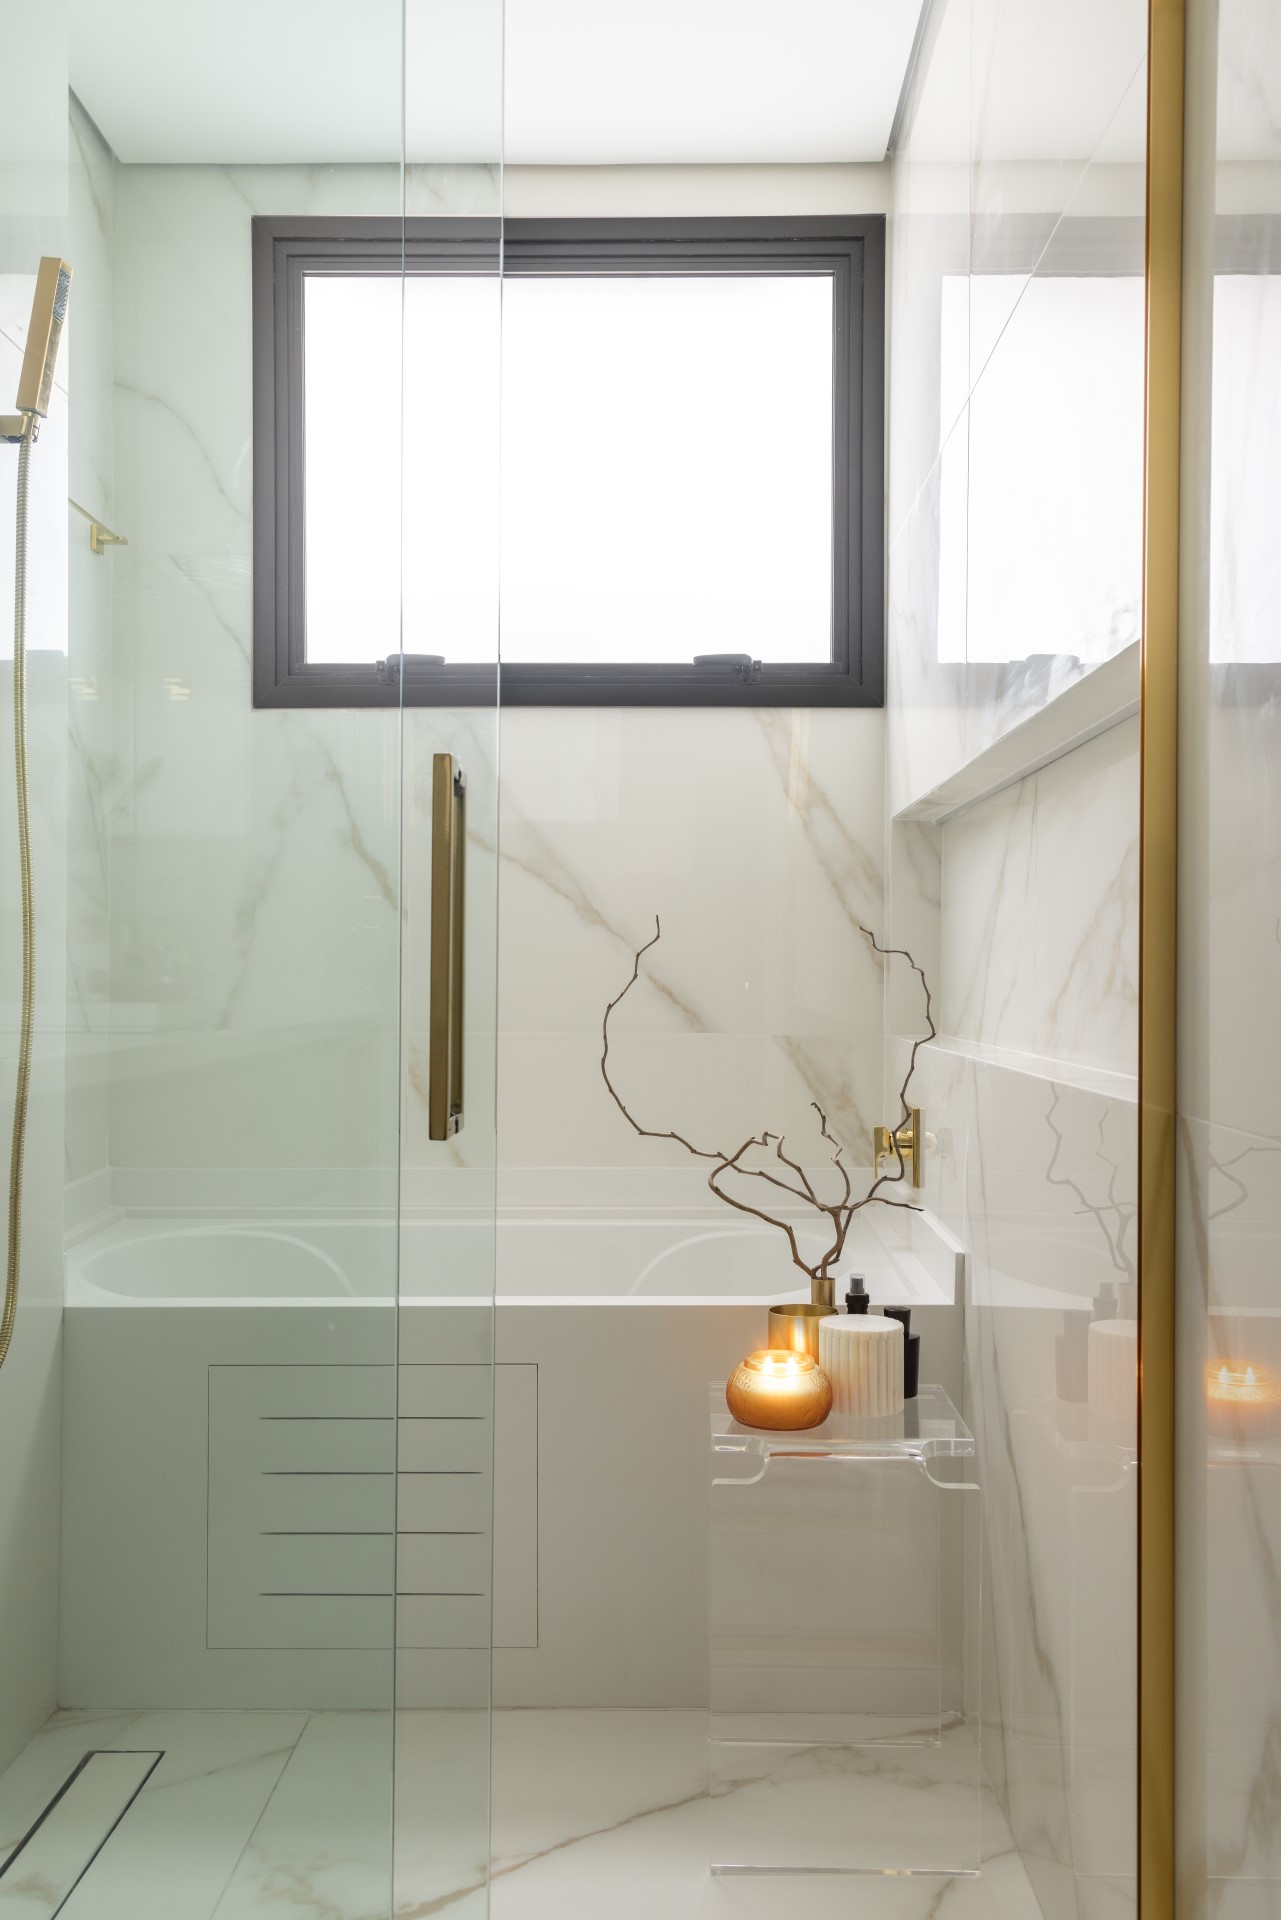 Projeto de Denise Polverini e Fernanda Villefort. Na foto, banheiro com revestimento de porcelanato marmorizado, banheira e metais dourados. Banco de acrílico ao lado da banheiro.